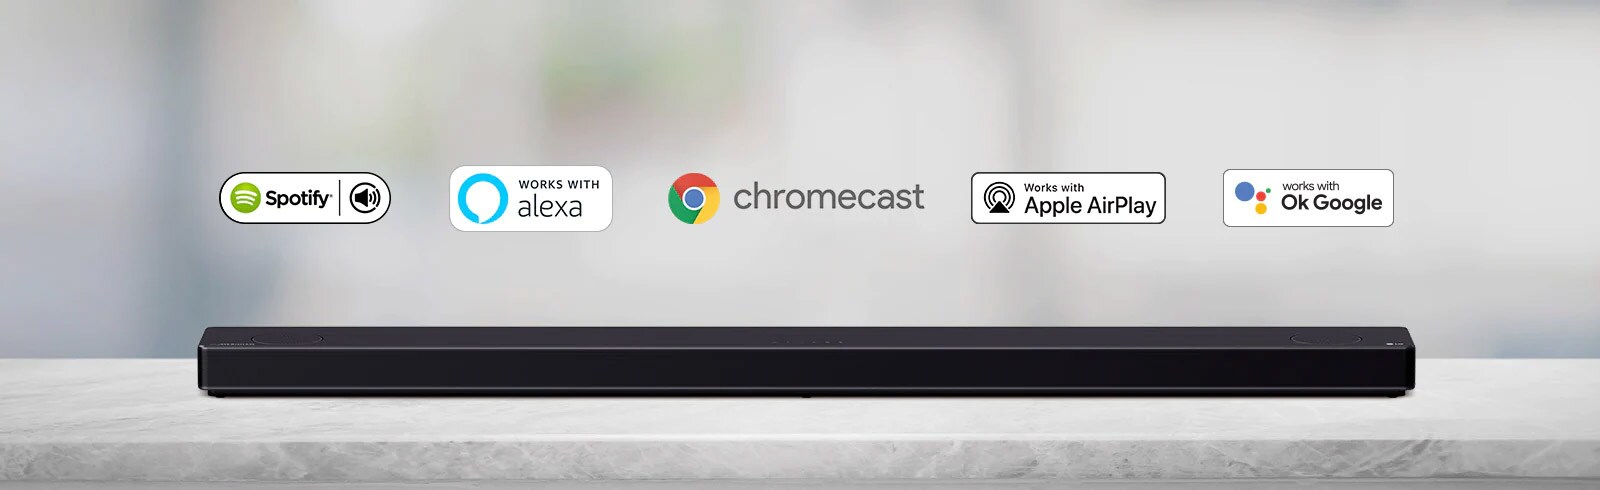 Loa soundbar đặt trên kệ màu xám và có logo nền tảng AI, theo thứ tự spotify, Alexa, Chromecast, Apple Airplay và OK Google từ trái sang phải.